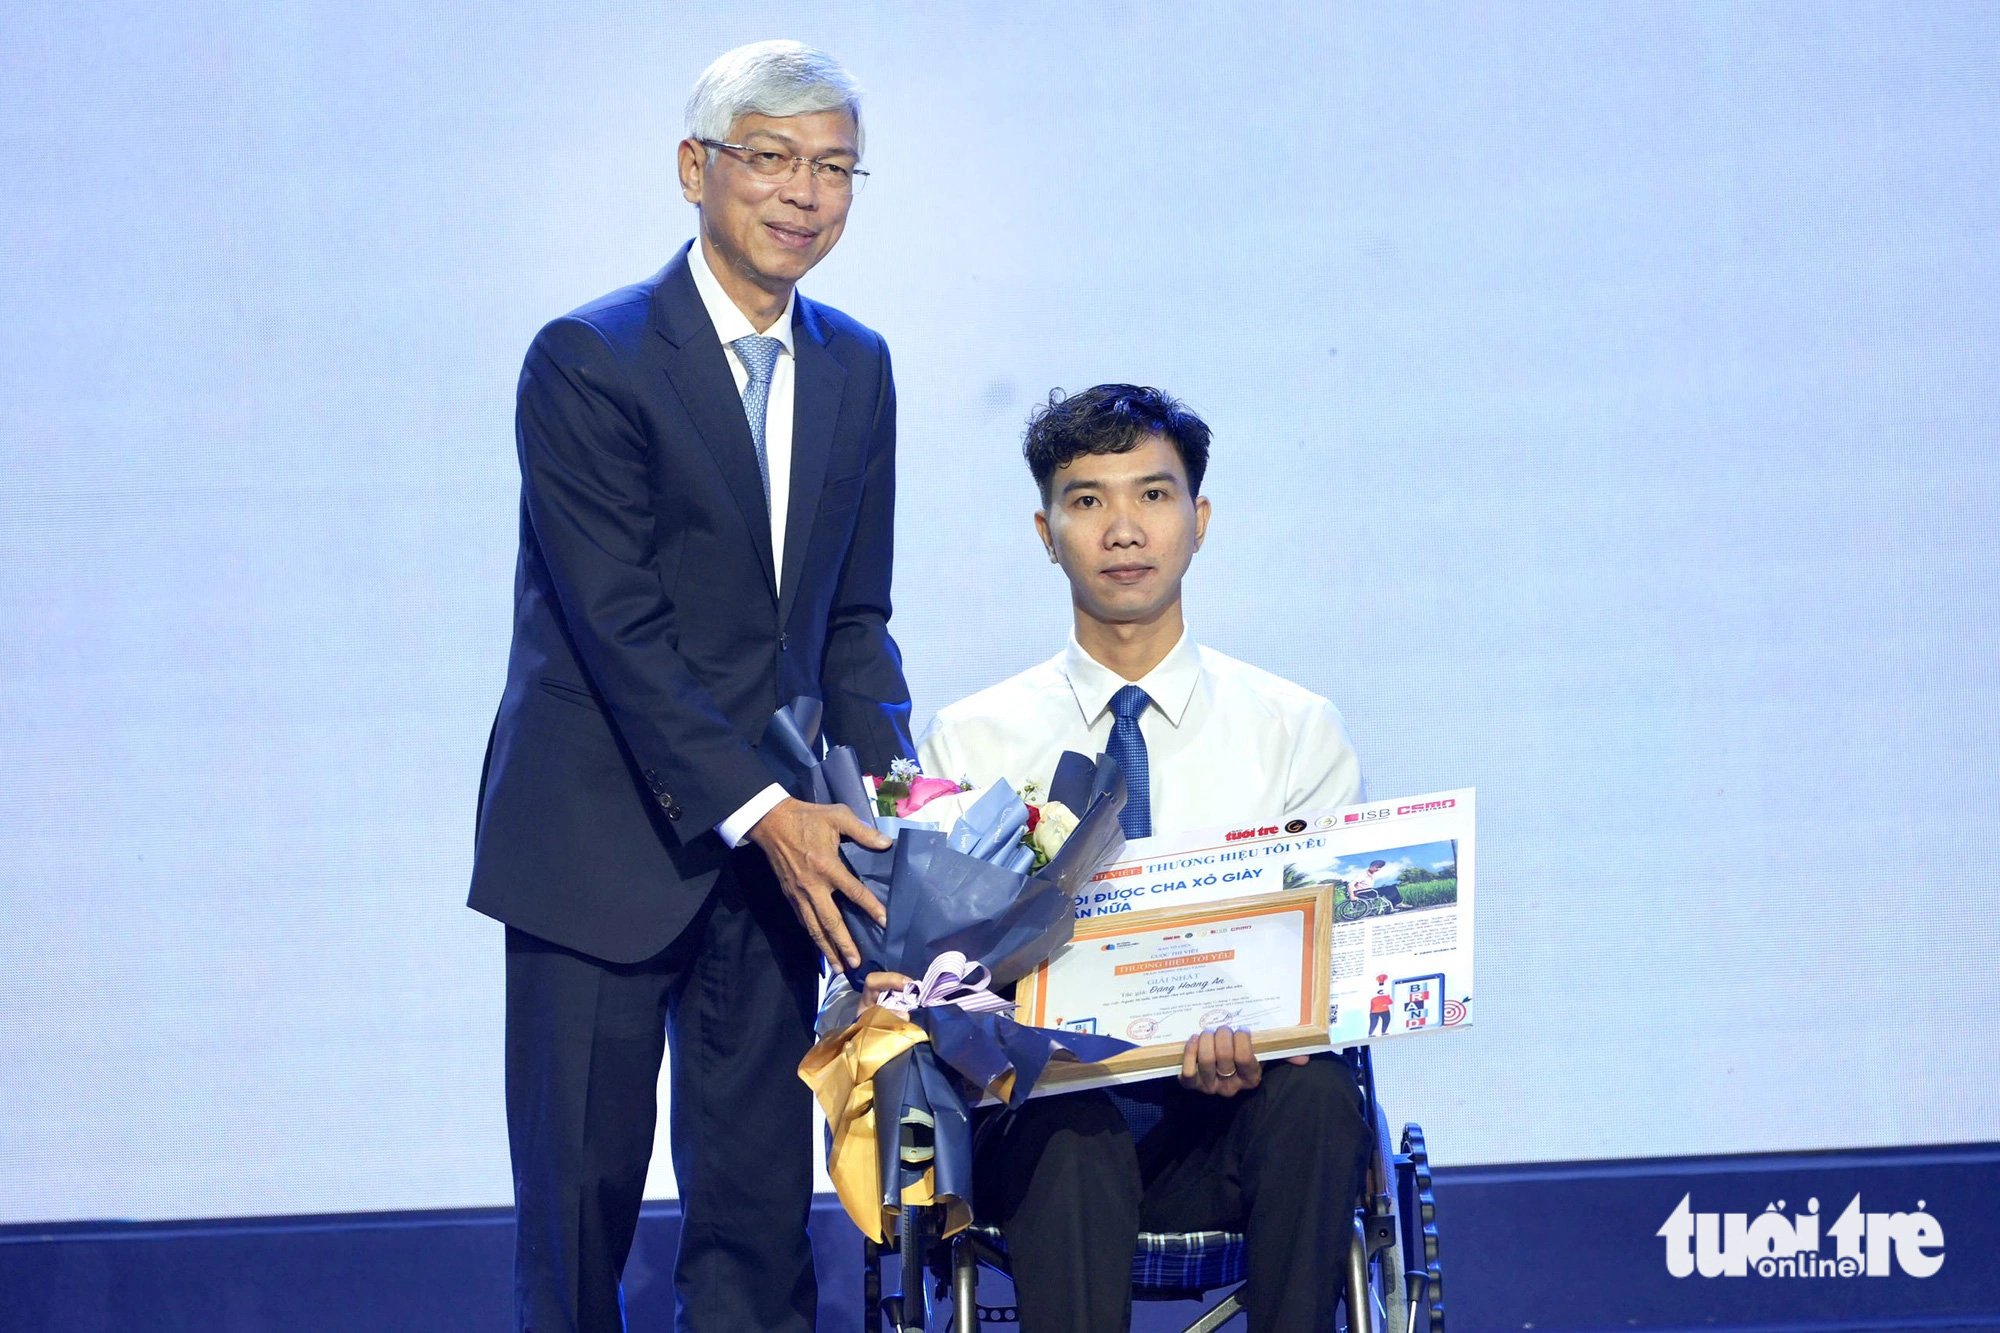 Phó chủ tịch UBND TP.HCM Võ Văn Hoan trao giải nhất cuộc thi “Thương hiệu tôi yêu” cho tác giả Đặng Hoàng An với bài “Ngoài 30 tuổi, tôi được cha xỏ giày vào chân một lần nữa” - Ảnh: HỮU HẠNH